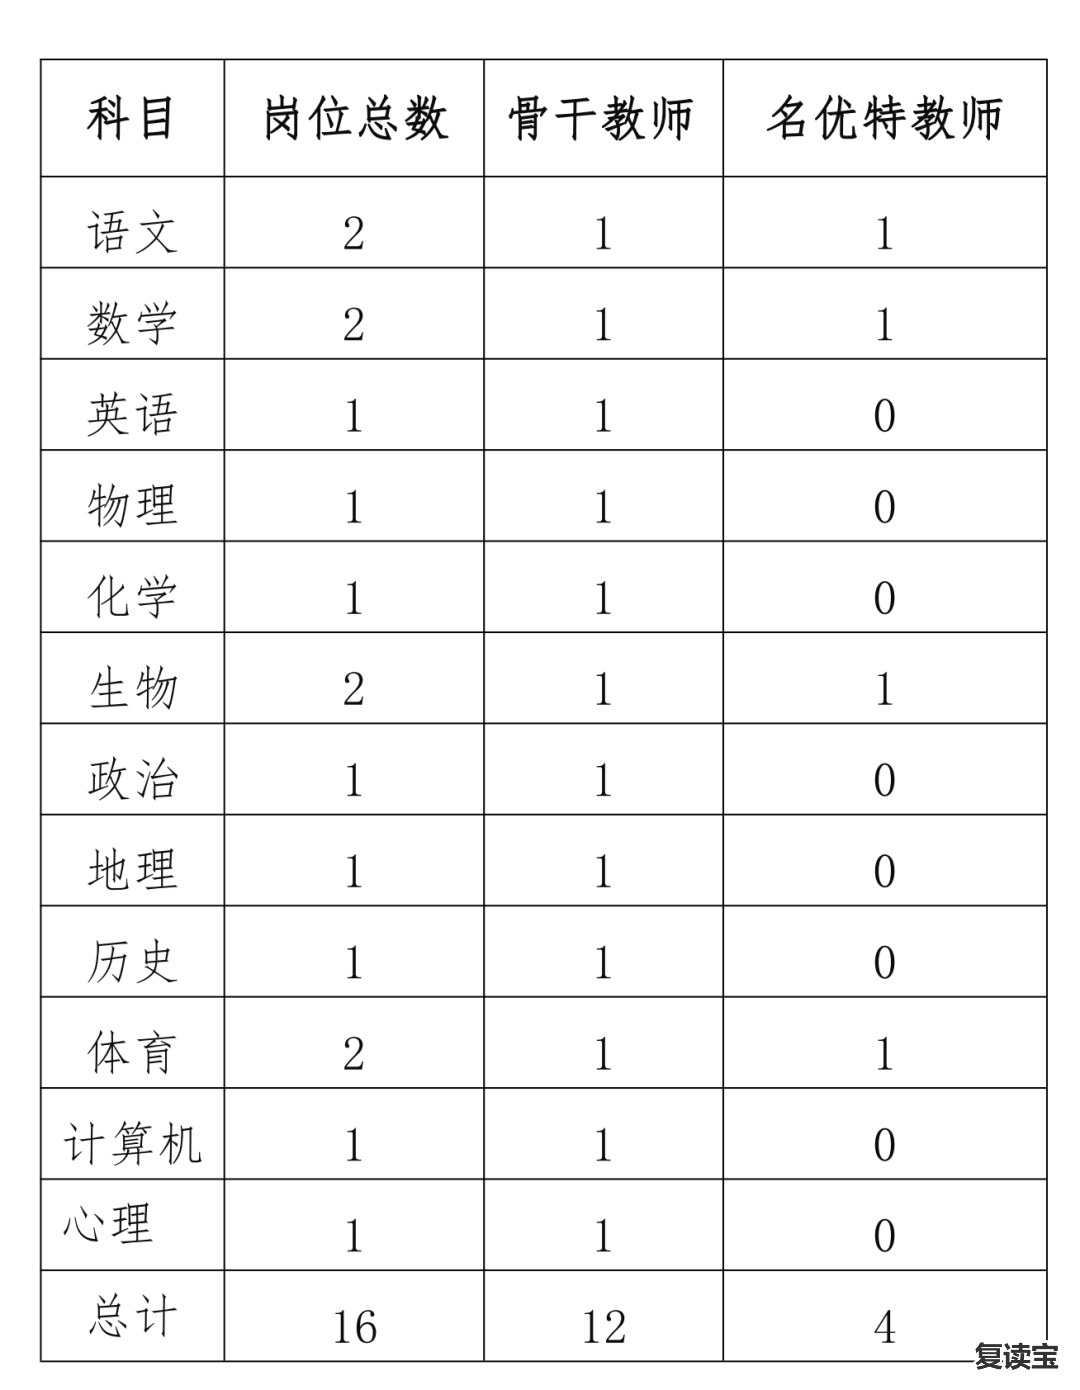 景雅高级中学教师招聘 【长沙】市恒定高级中学2023年5月中旬招聘各科教师16人